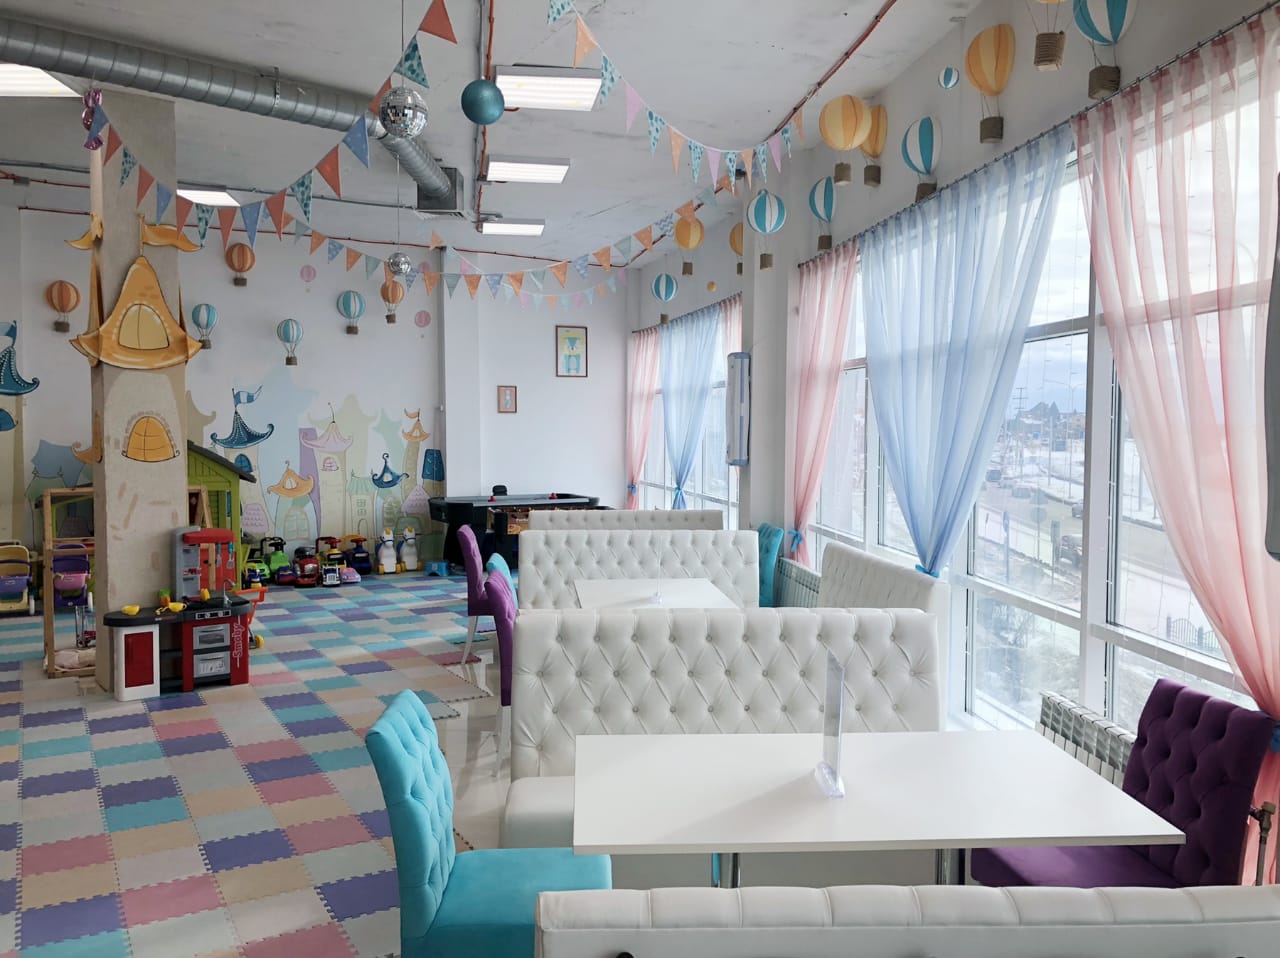 Мебель в г.Нефтеюганск "Резиденция детства"